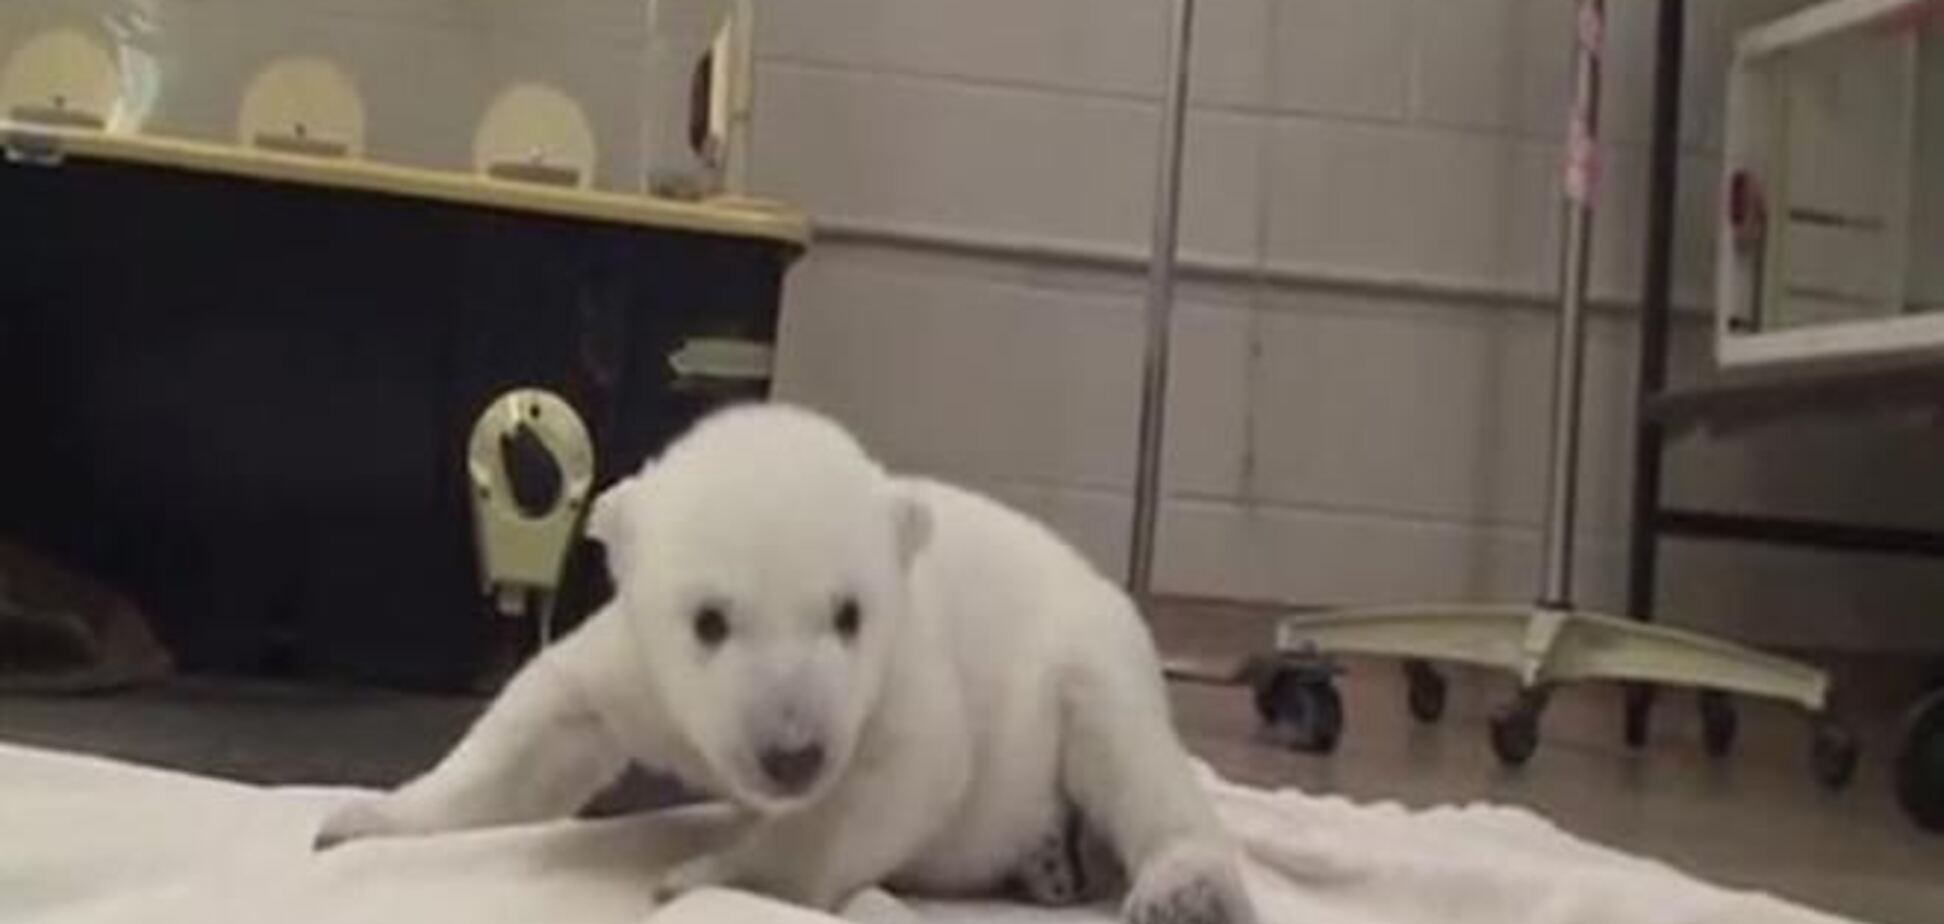 Опубликовано видео первых шагов спасенного медвежонка